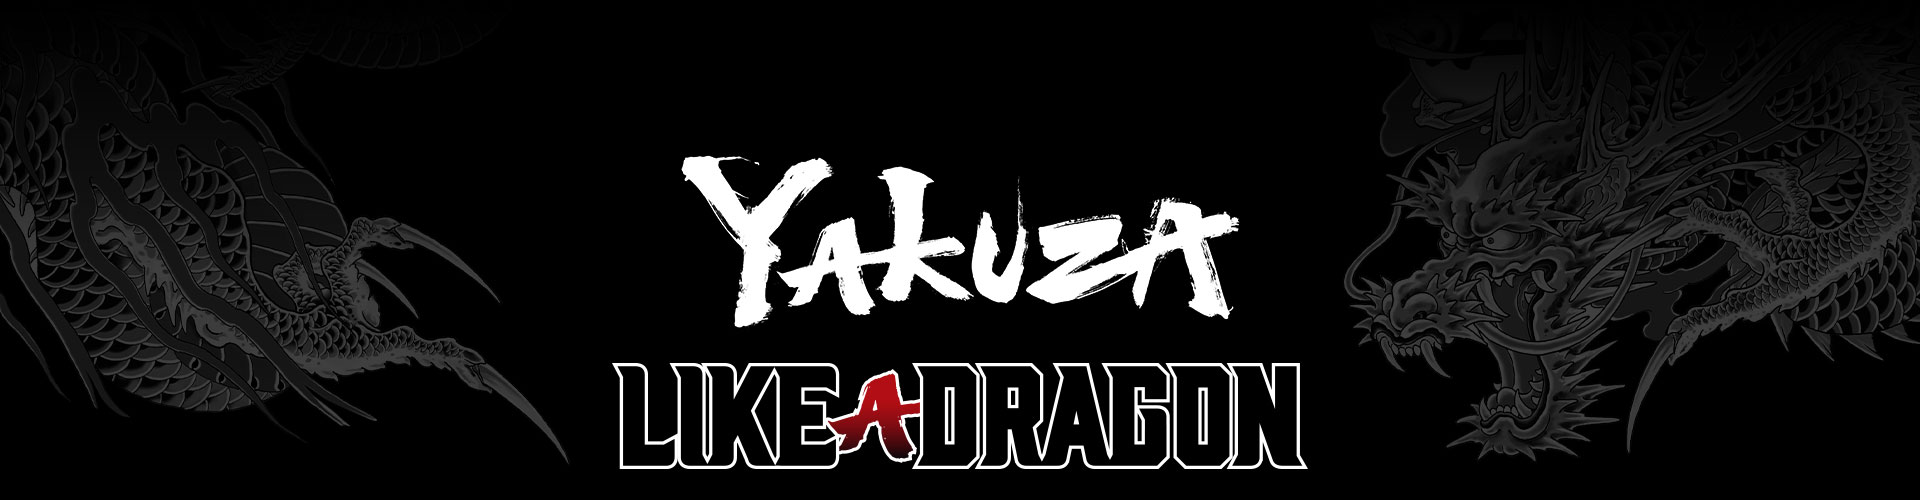 Yakuza Like a Dragon-franchiselogo met een gestileerde grijze draaktatoeage als achtergrond.